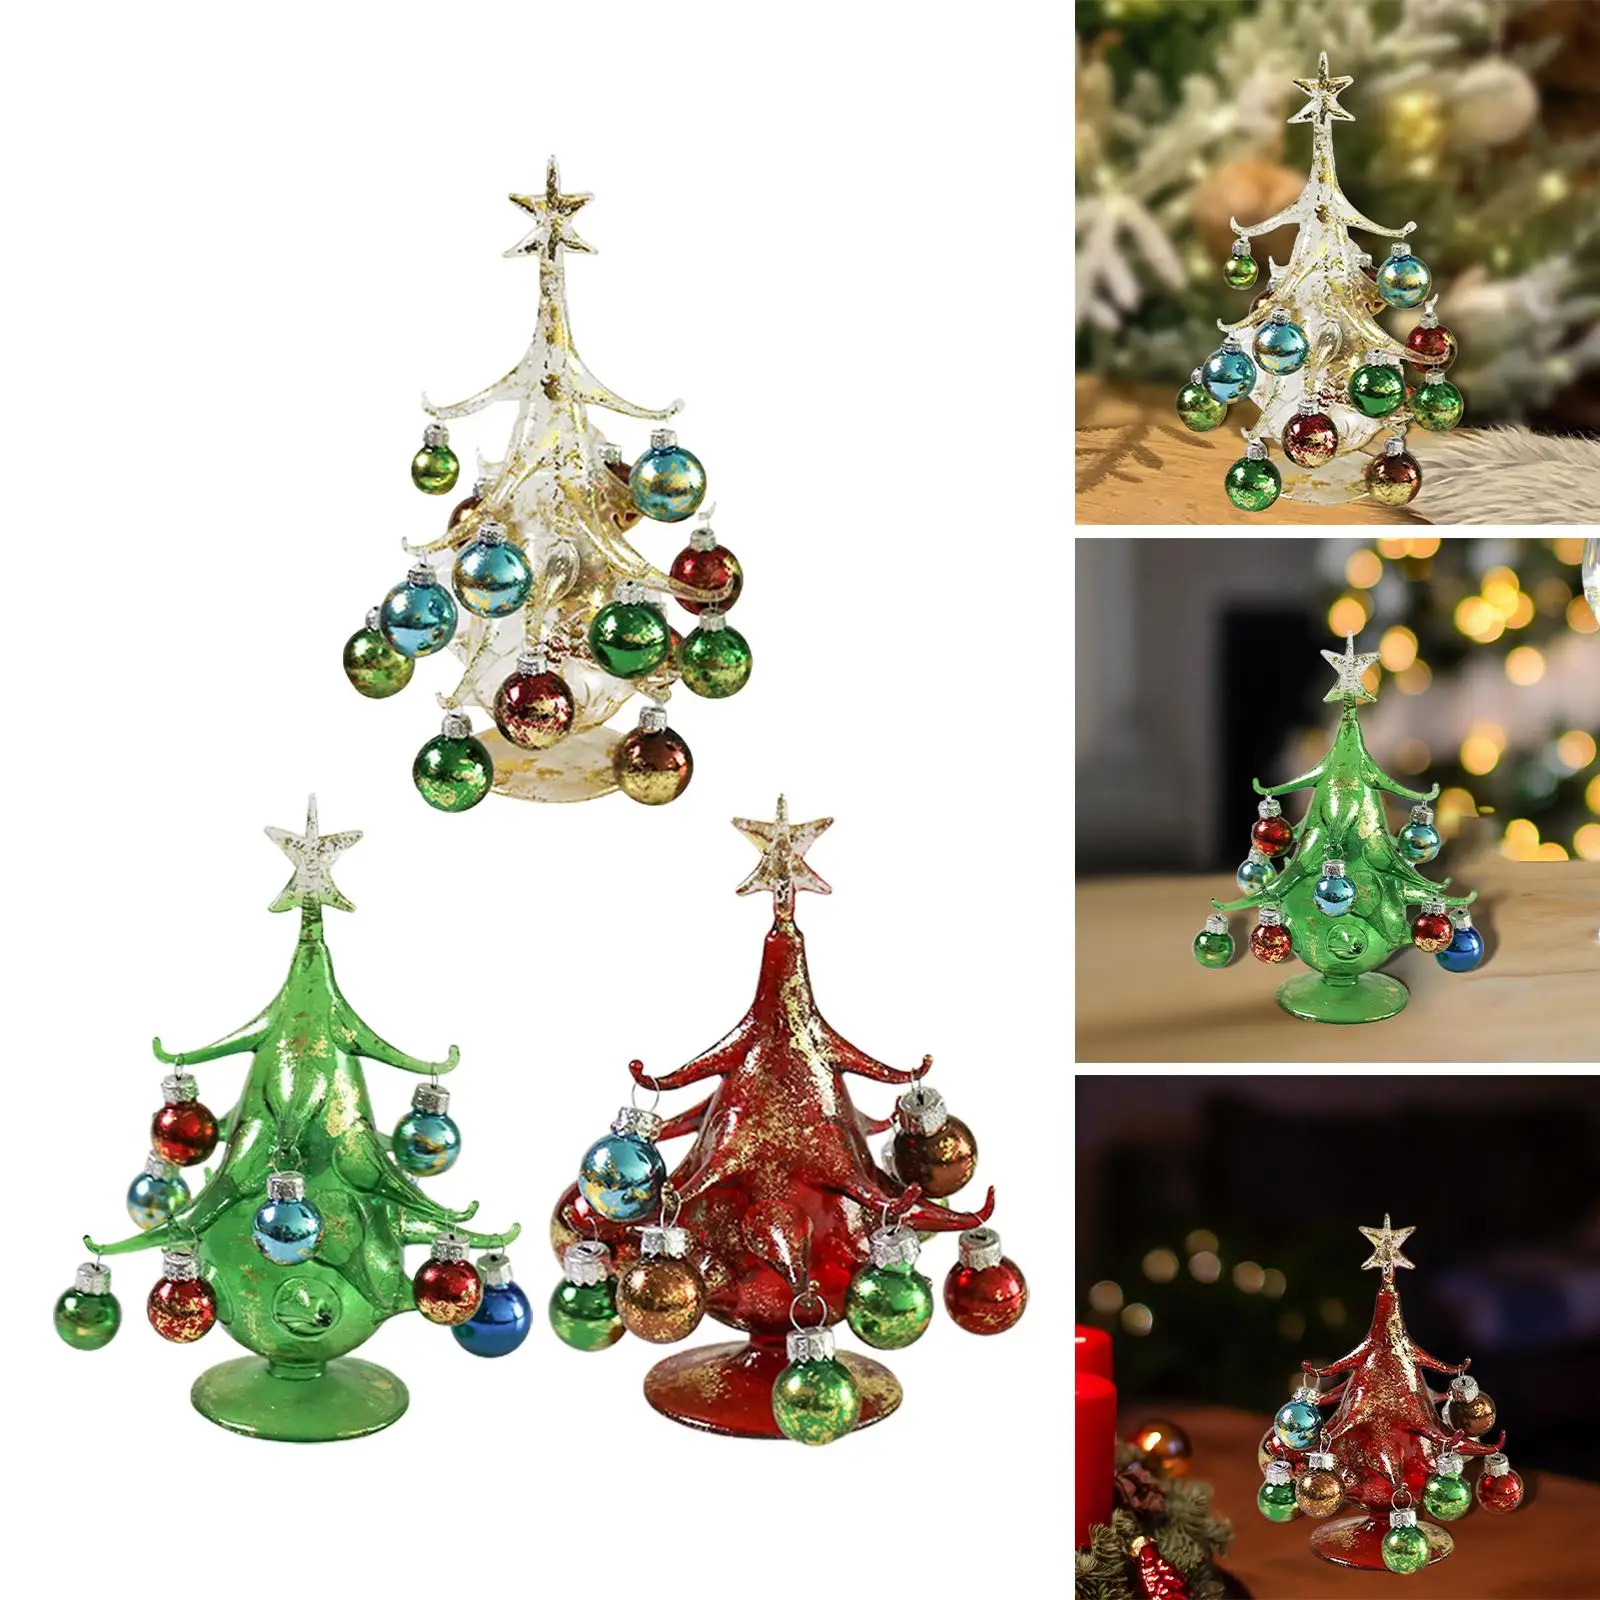 Árvore de Natal e bonecos de neve adorno para árvore Natal vidro soprado